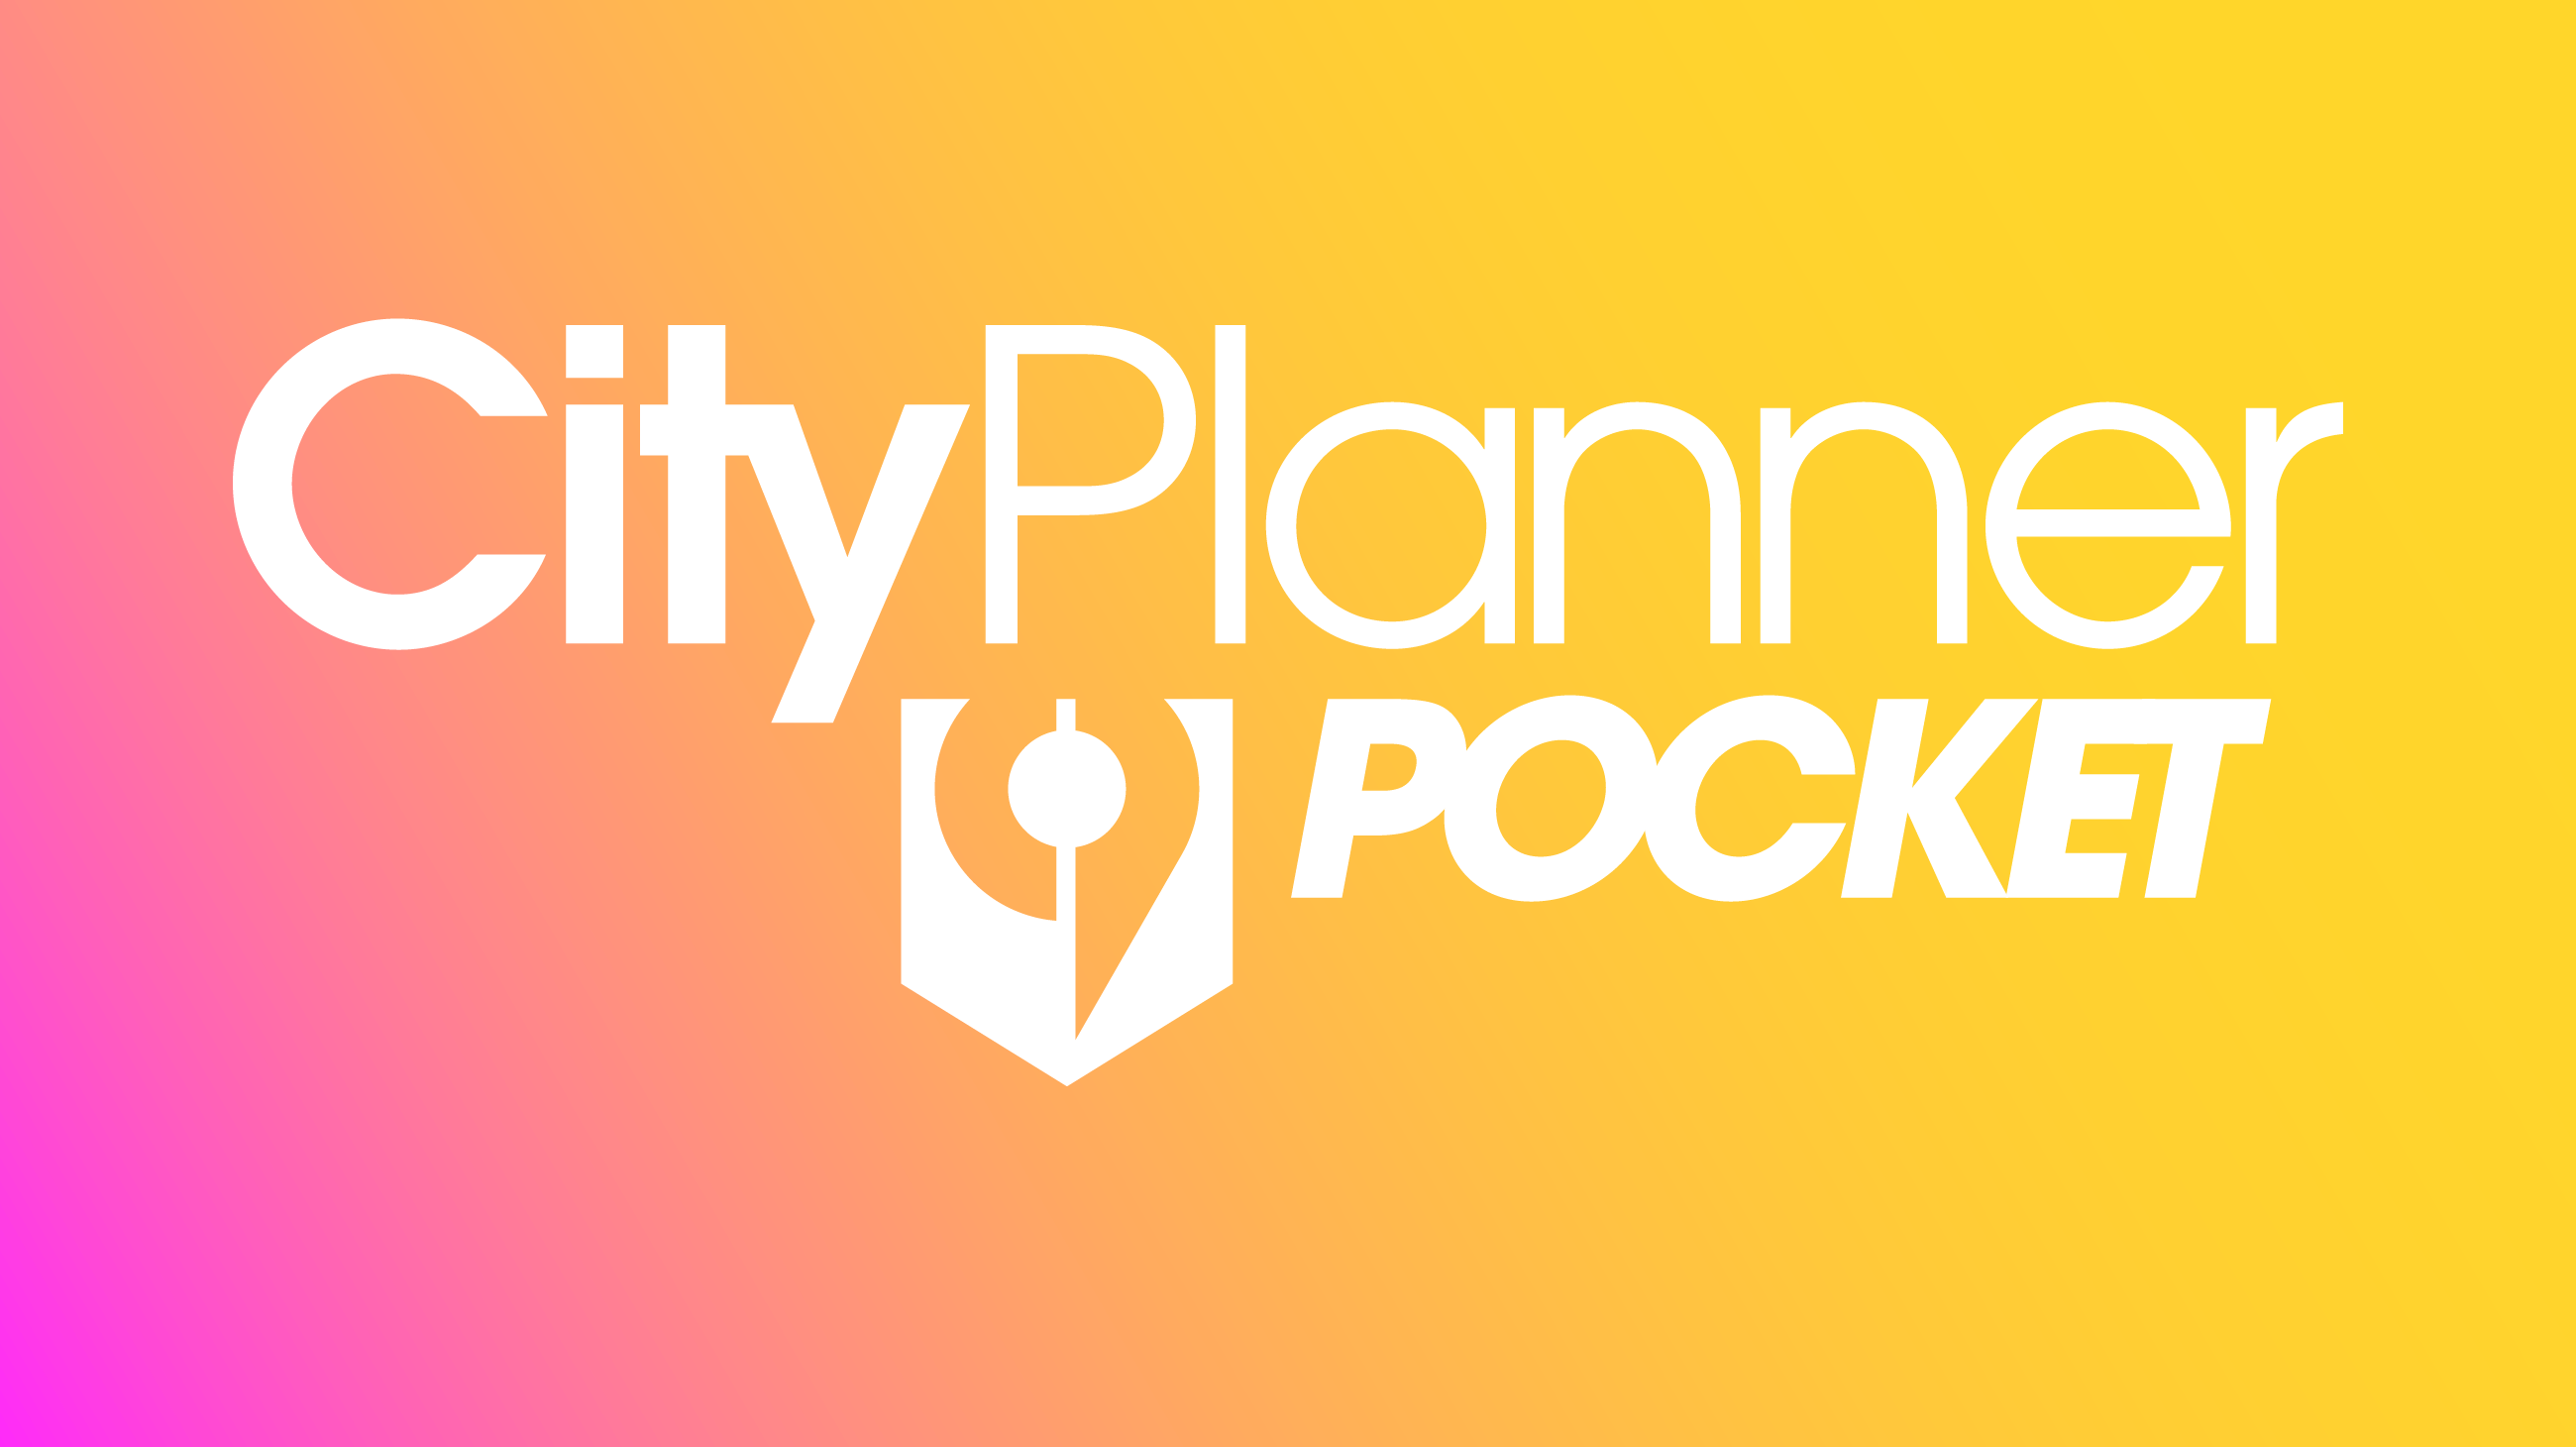 OpenCities Planner Pocket